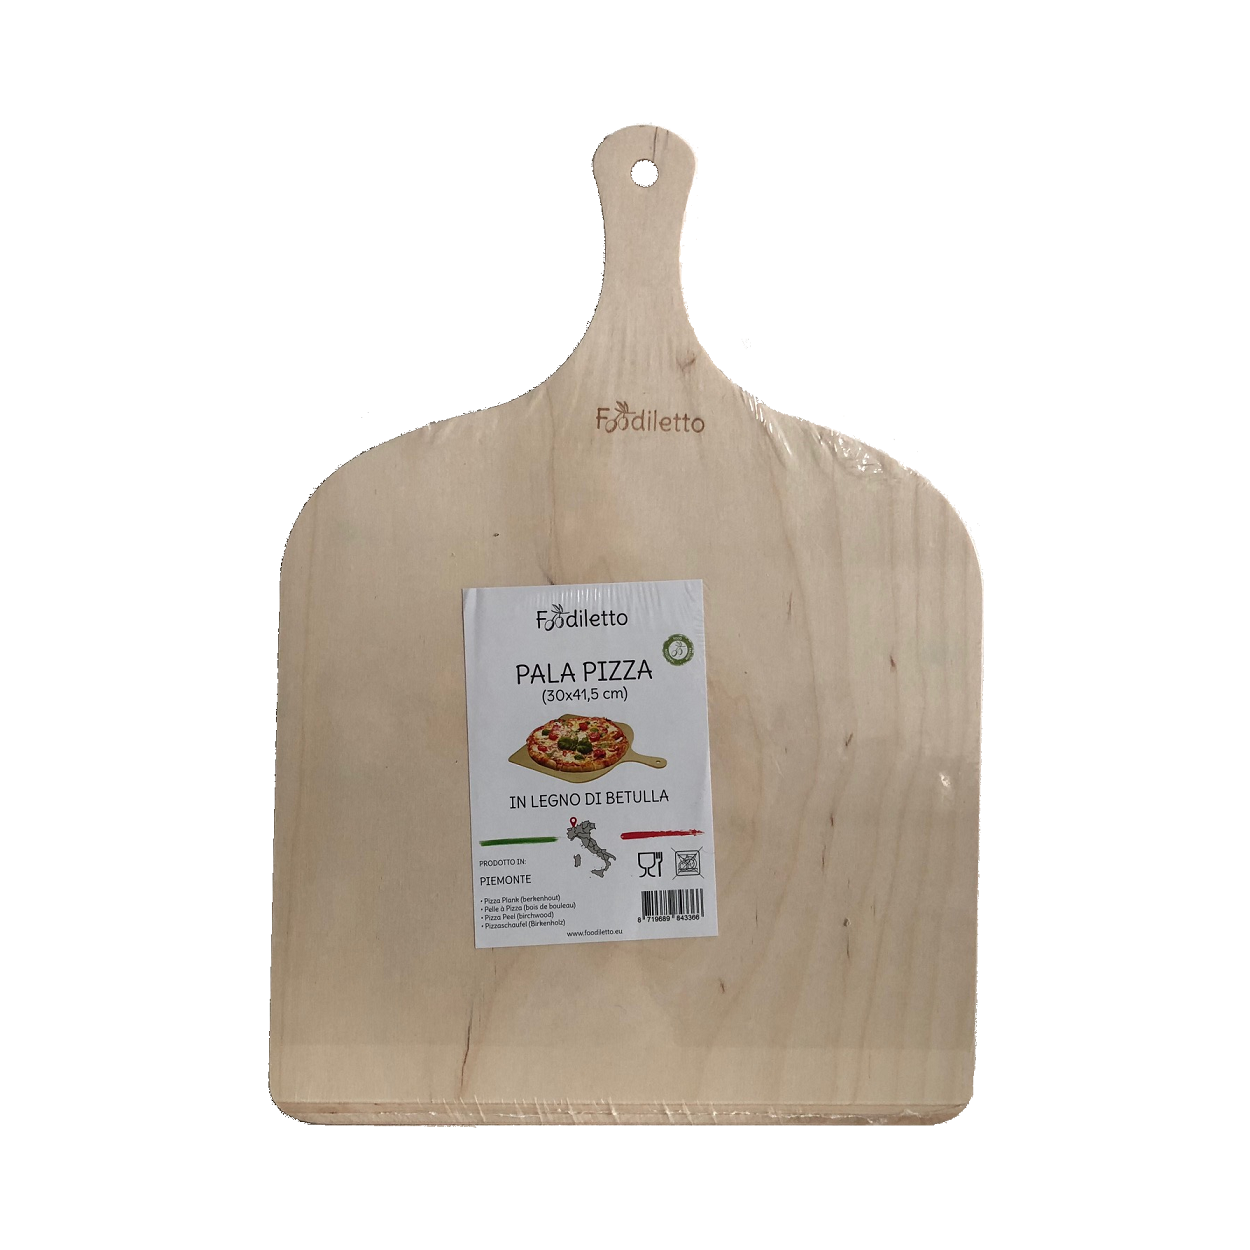 Eppicotispai - Pala per pizza in legno di betulla anche nel set 30 x 41,5  cm, Set da 2